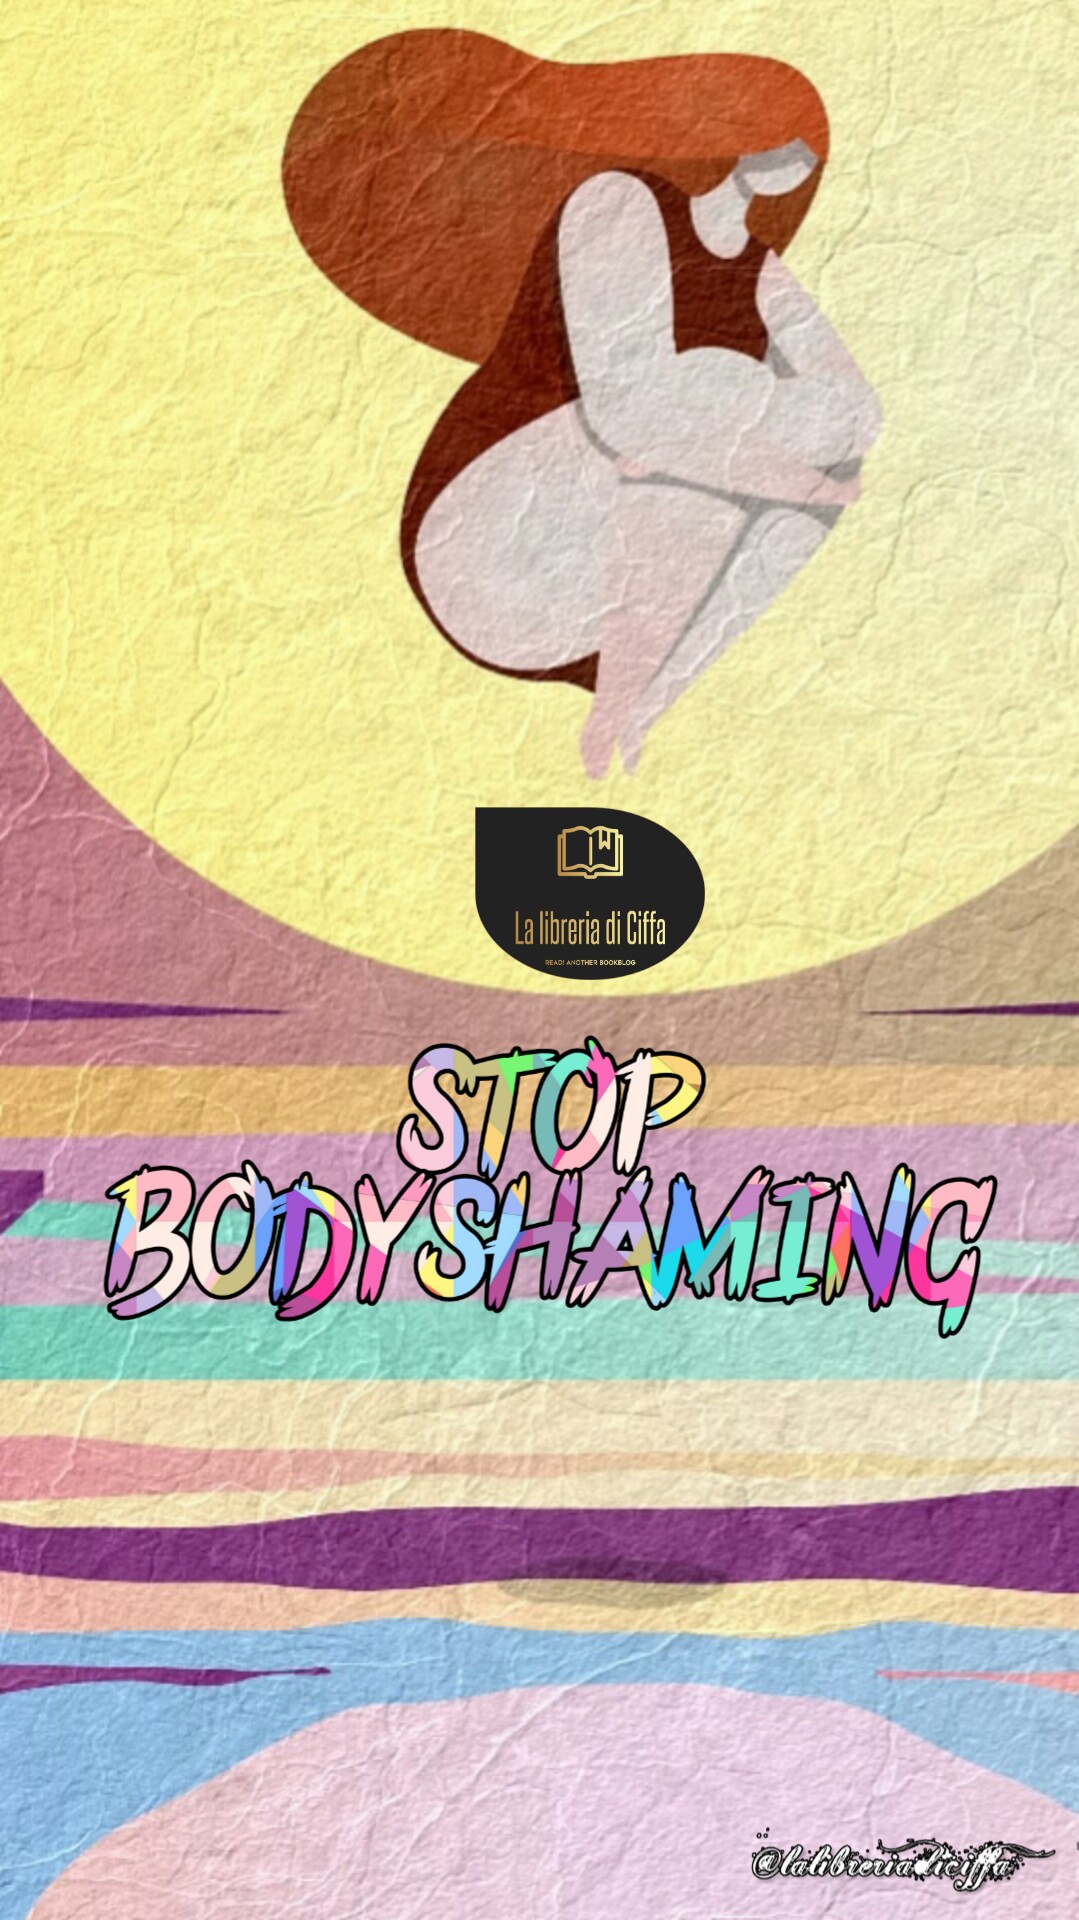 Sostieni anche tu, come me, lo #stopbodyshaming